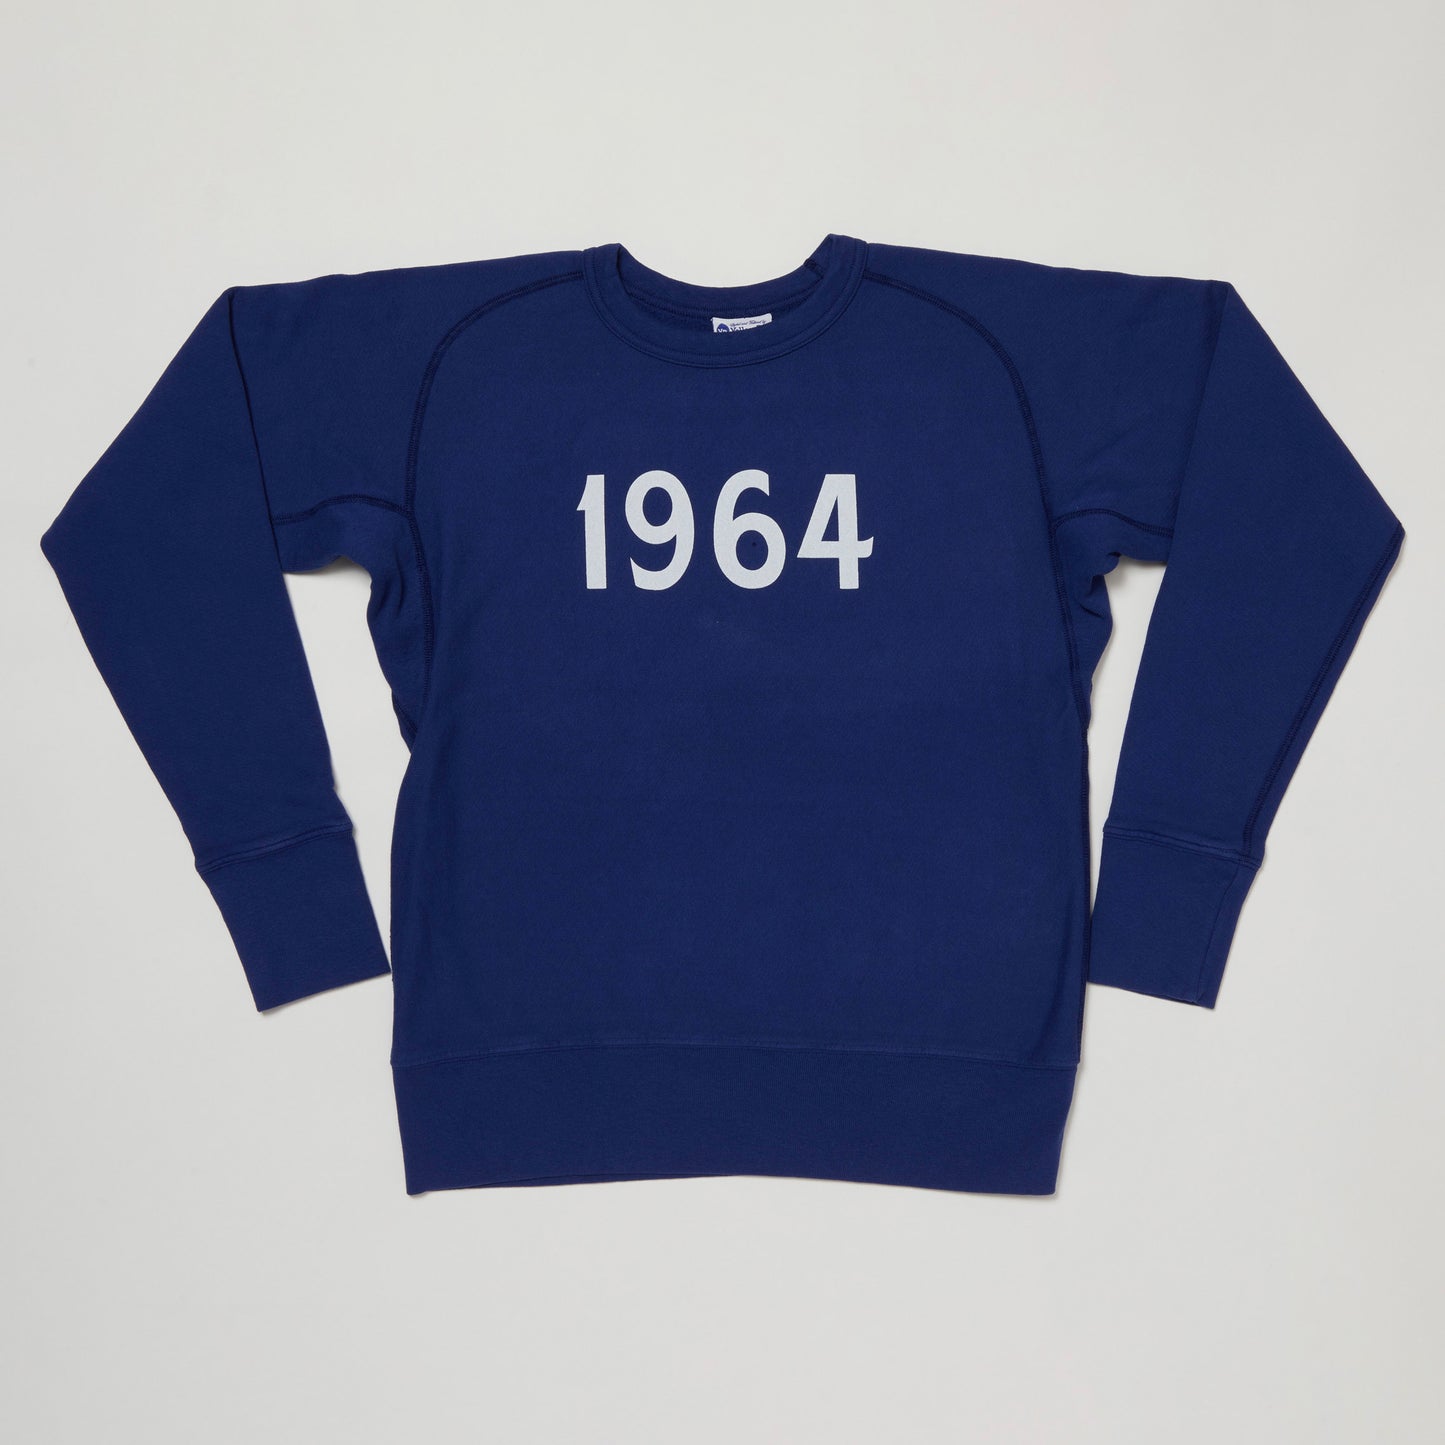 1964 Sweatshirt II (Blue)